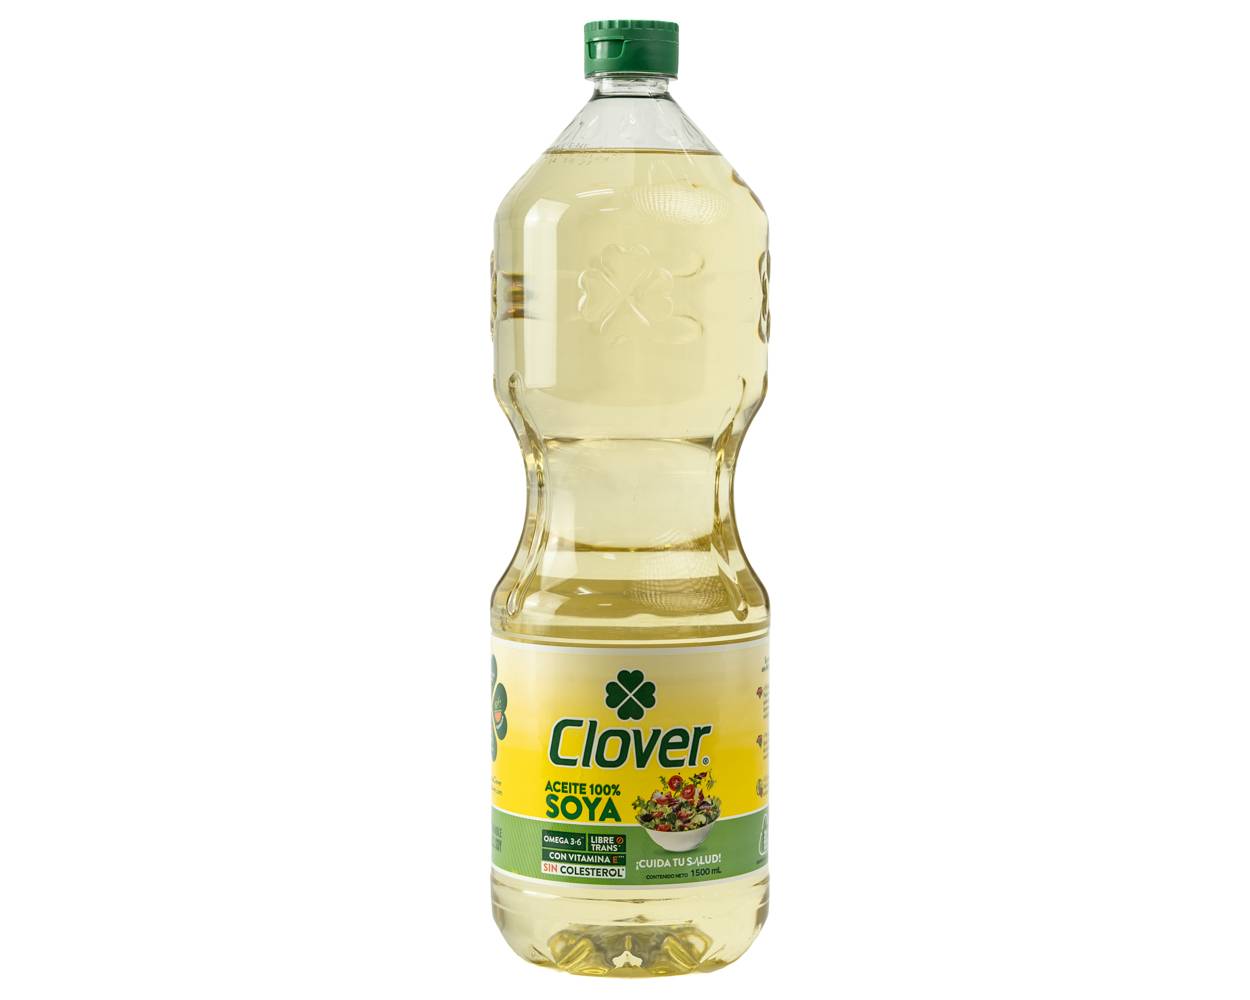 Clover aceite de soya (1.5 l)